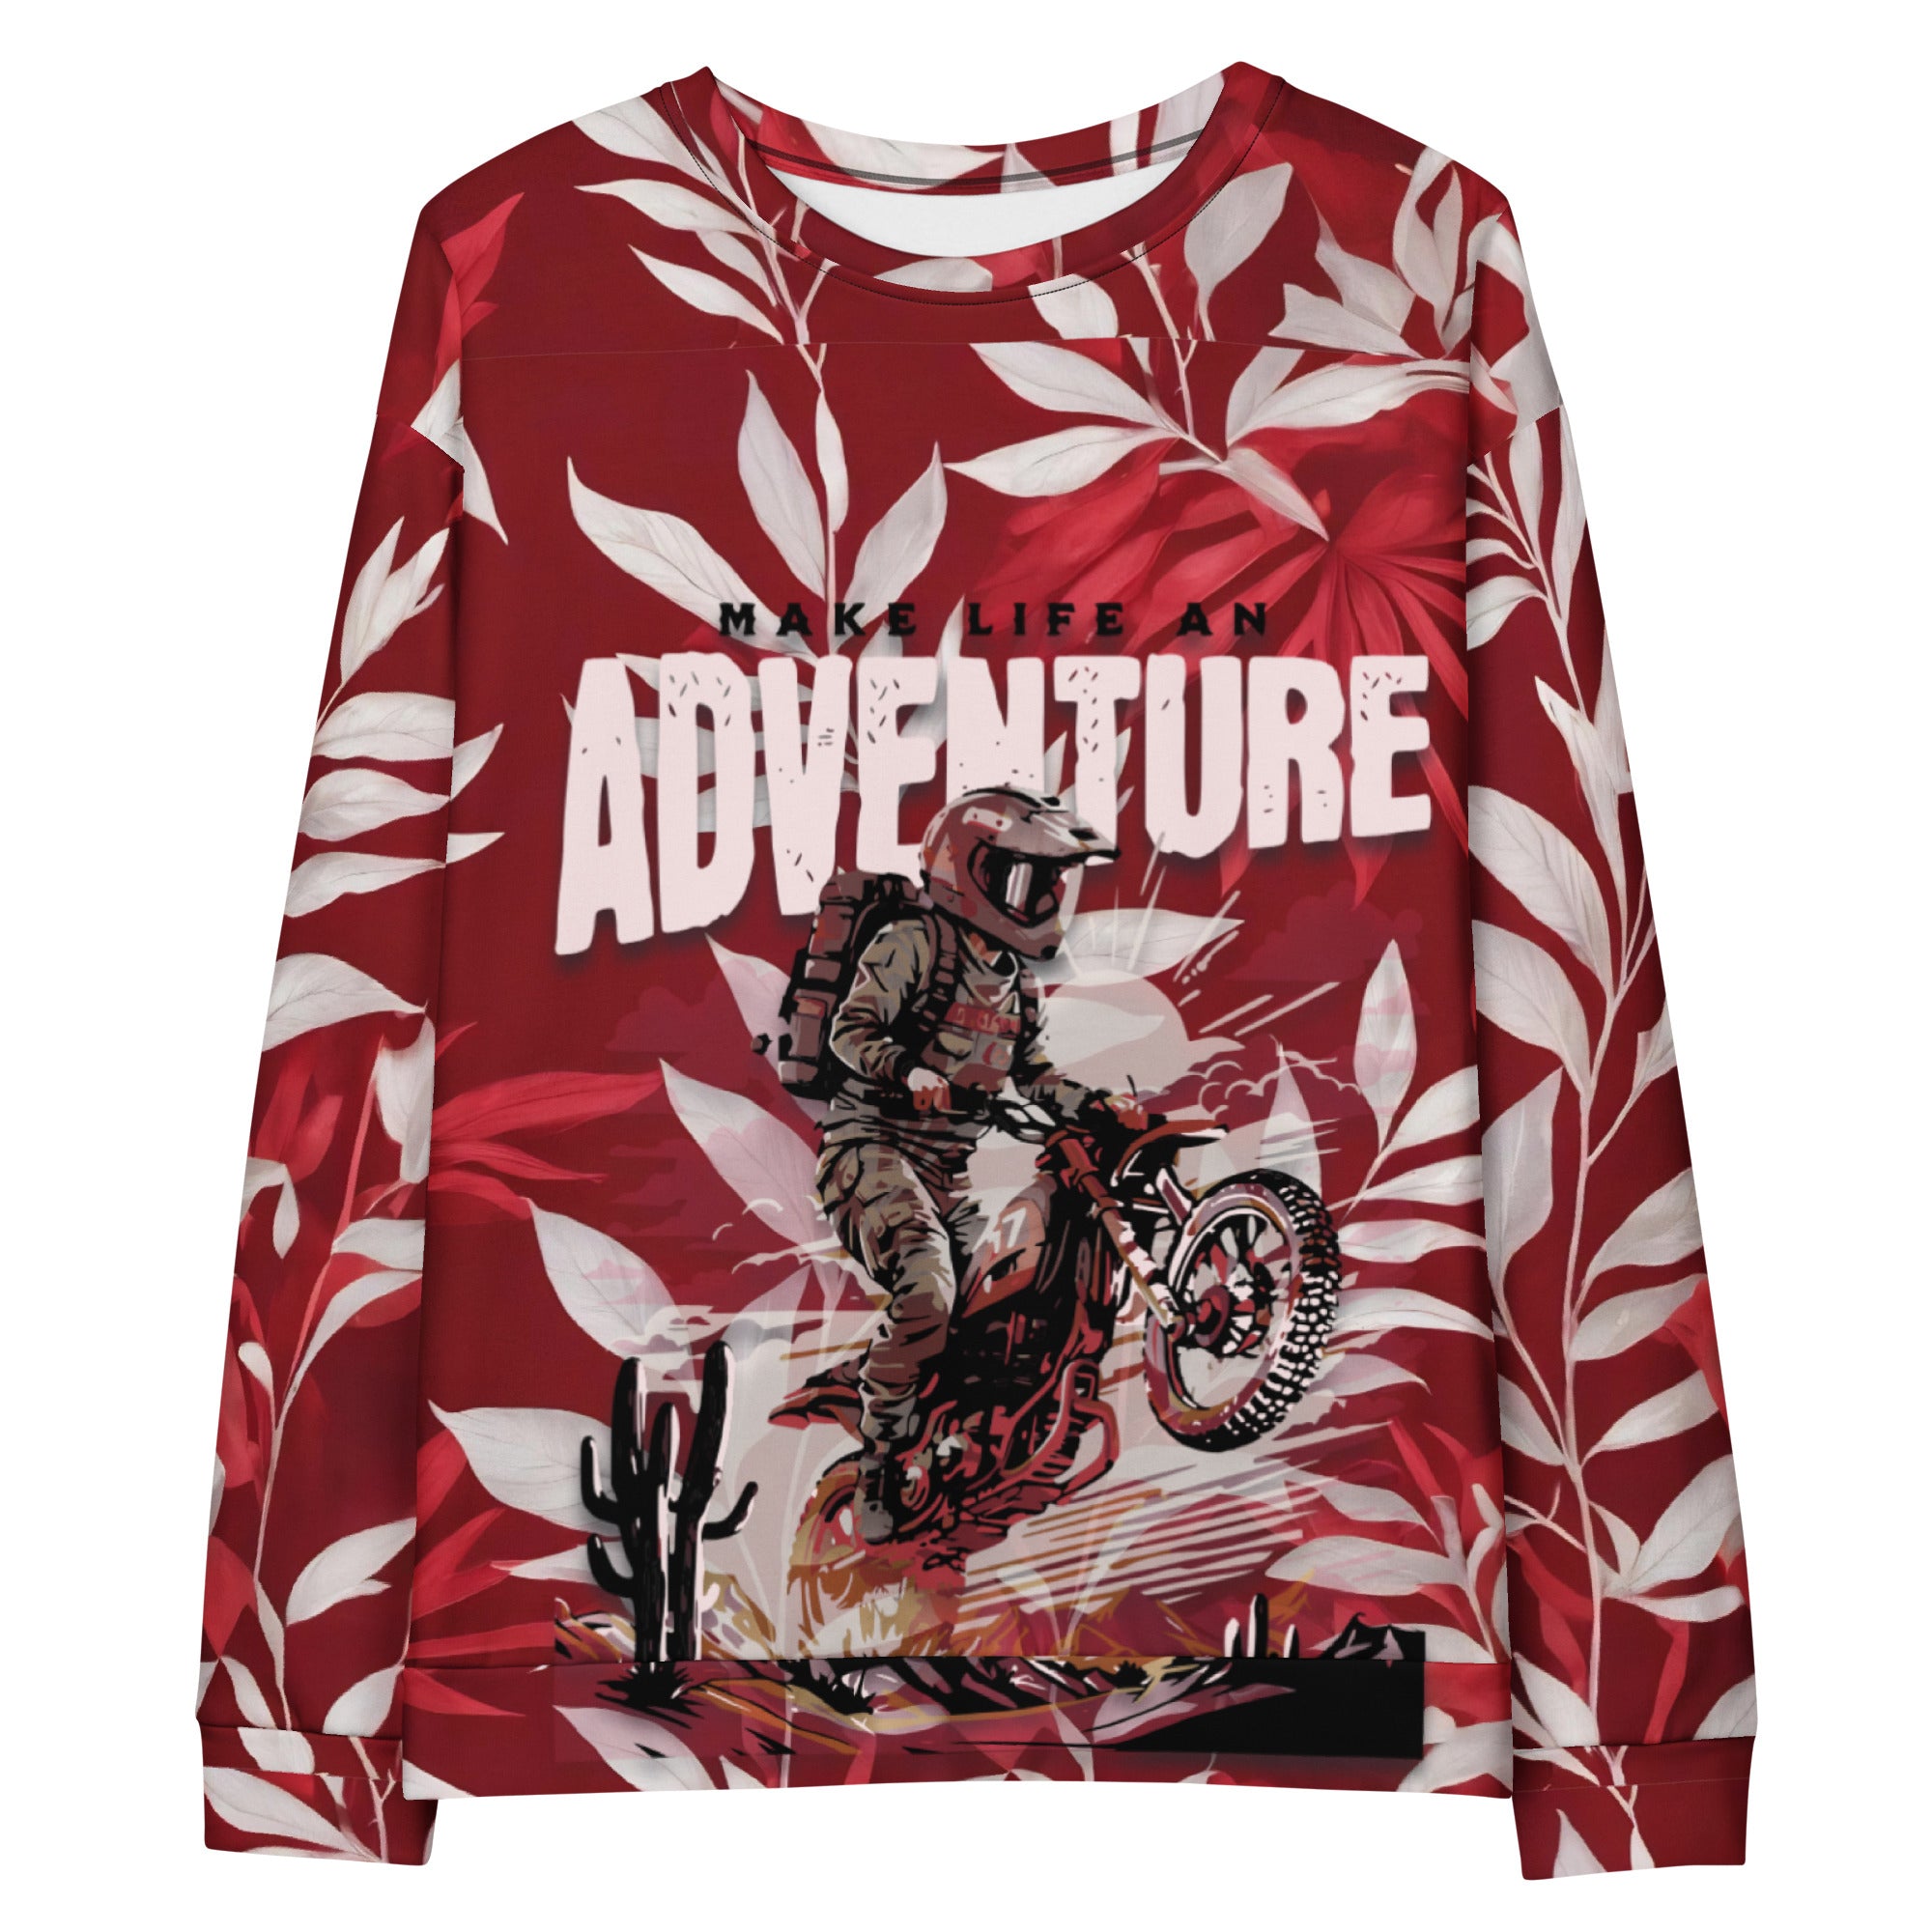 Adventure Men's Sweatshirt